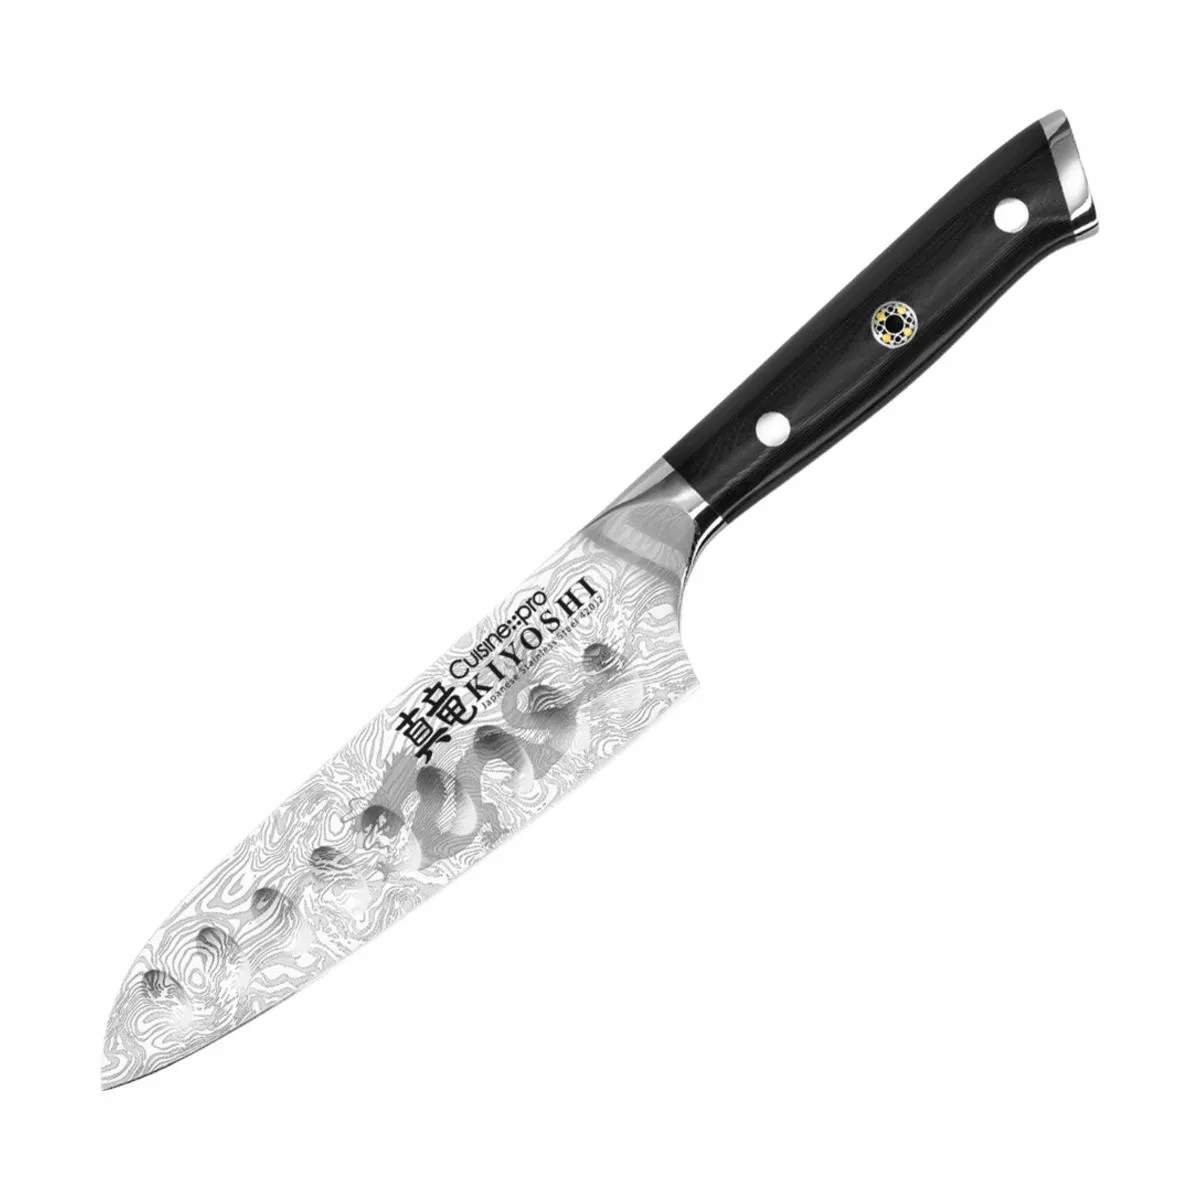 KIYOSHI™ Santoku Try Me Kniv, sølvfarvet/sort, large